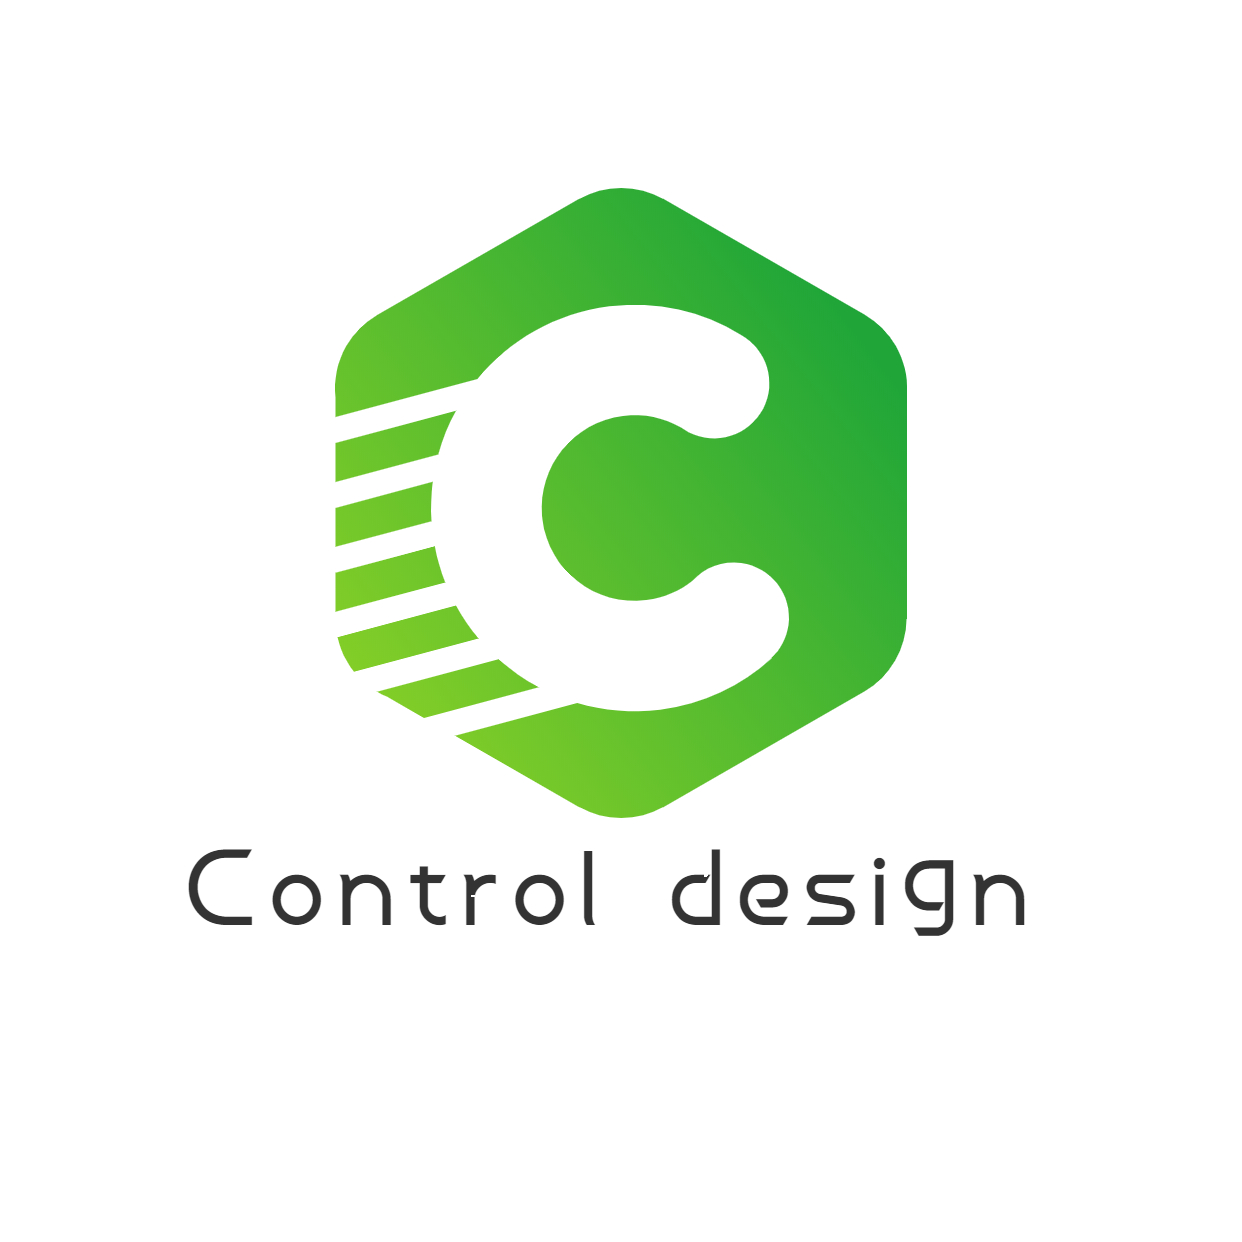 Control design